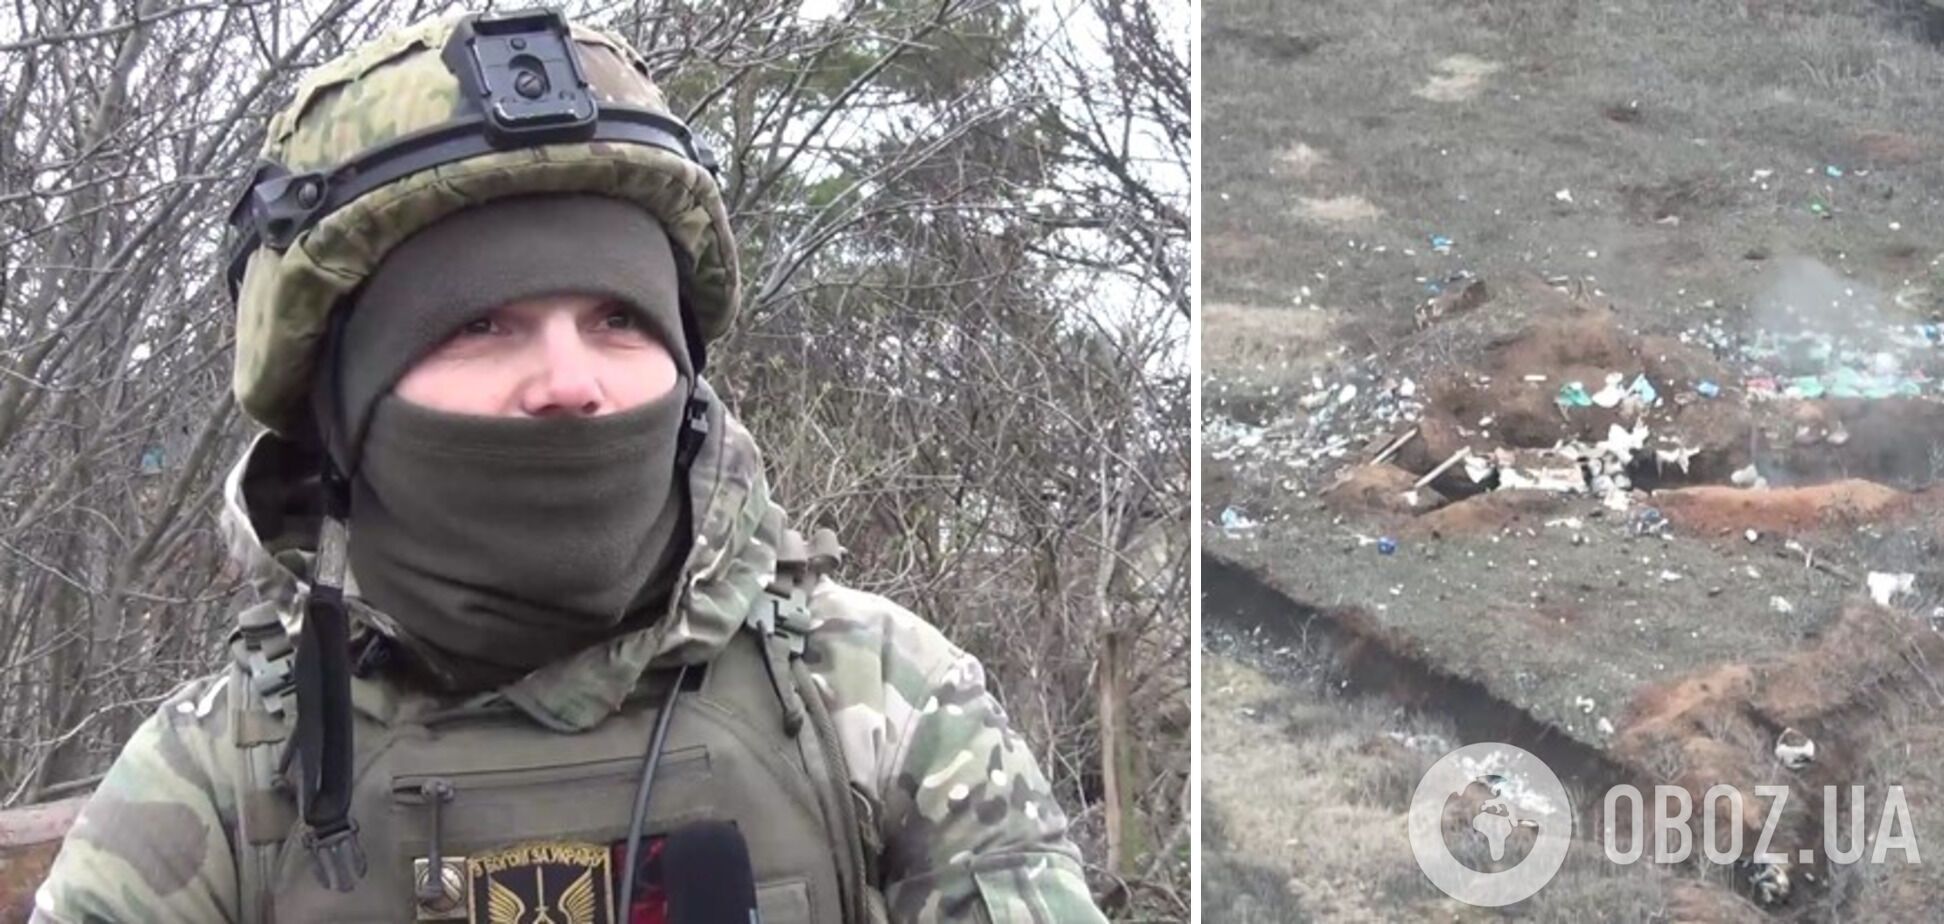 Українські єгері-десантники знищили підрозділ окупантів та зайняли їхні бойові позиції. Відео 18+